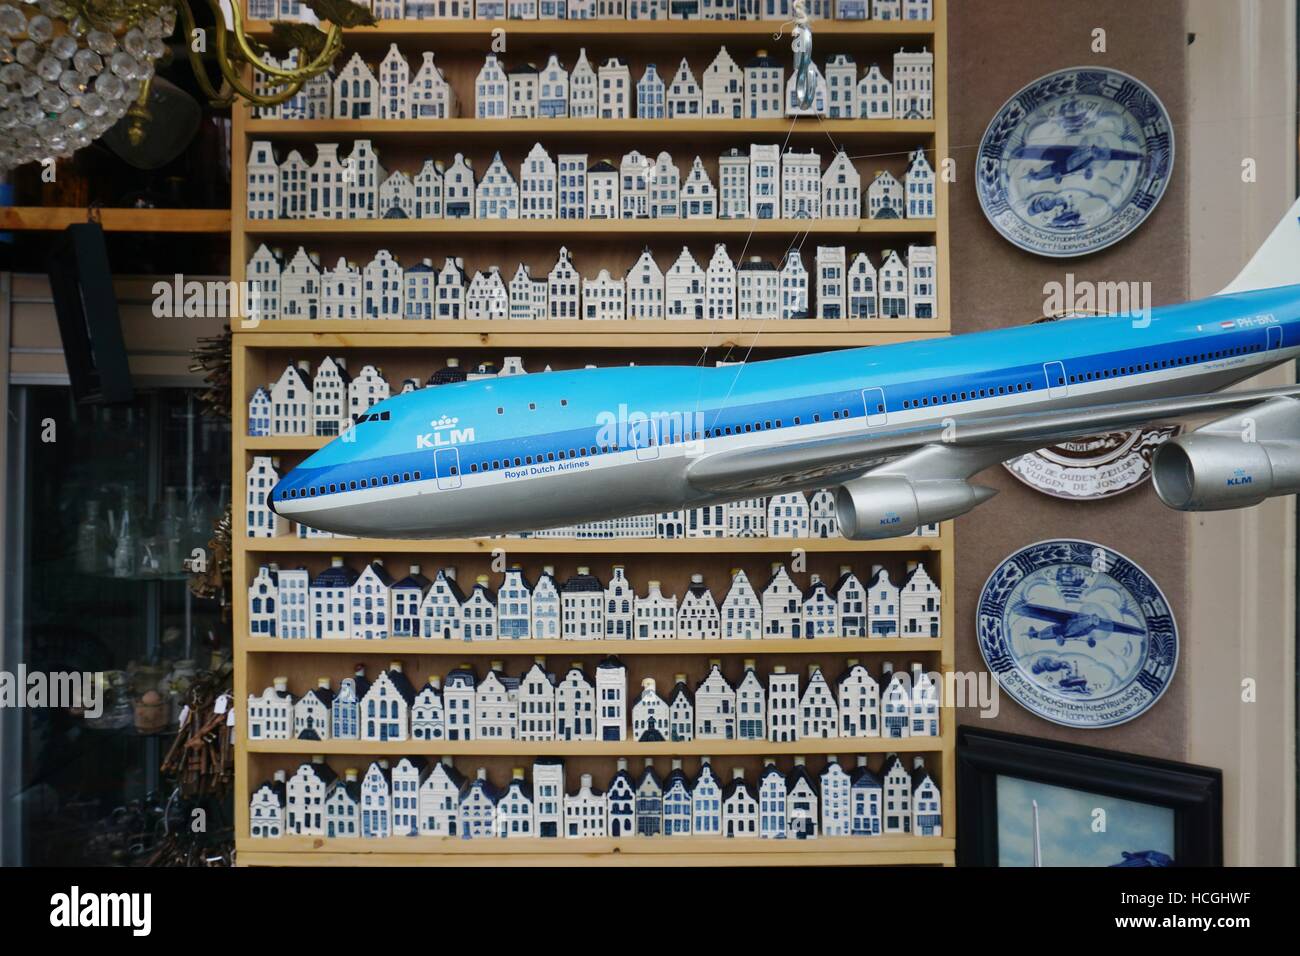 Una tienda que vende coleccionables comodidades de KLM en miniatura de porcelana de Delft casas y modelos de avión de KLM en Ámsterdam, Países Bajos Foto de stock